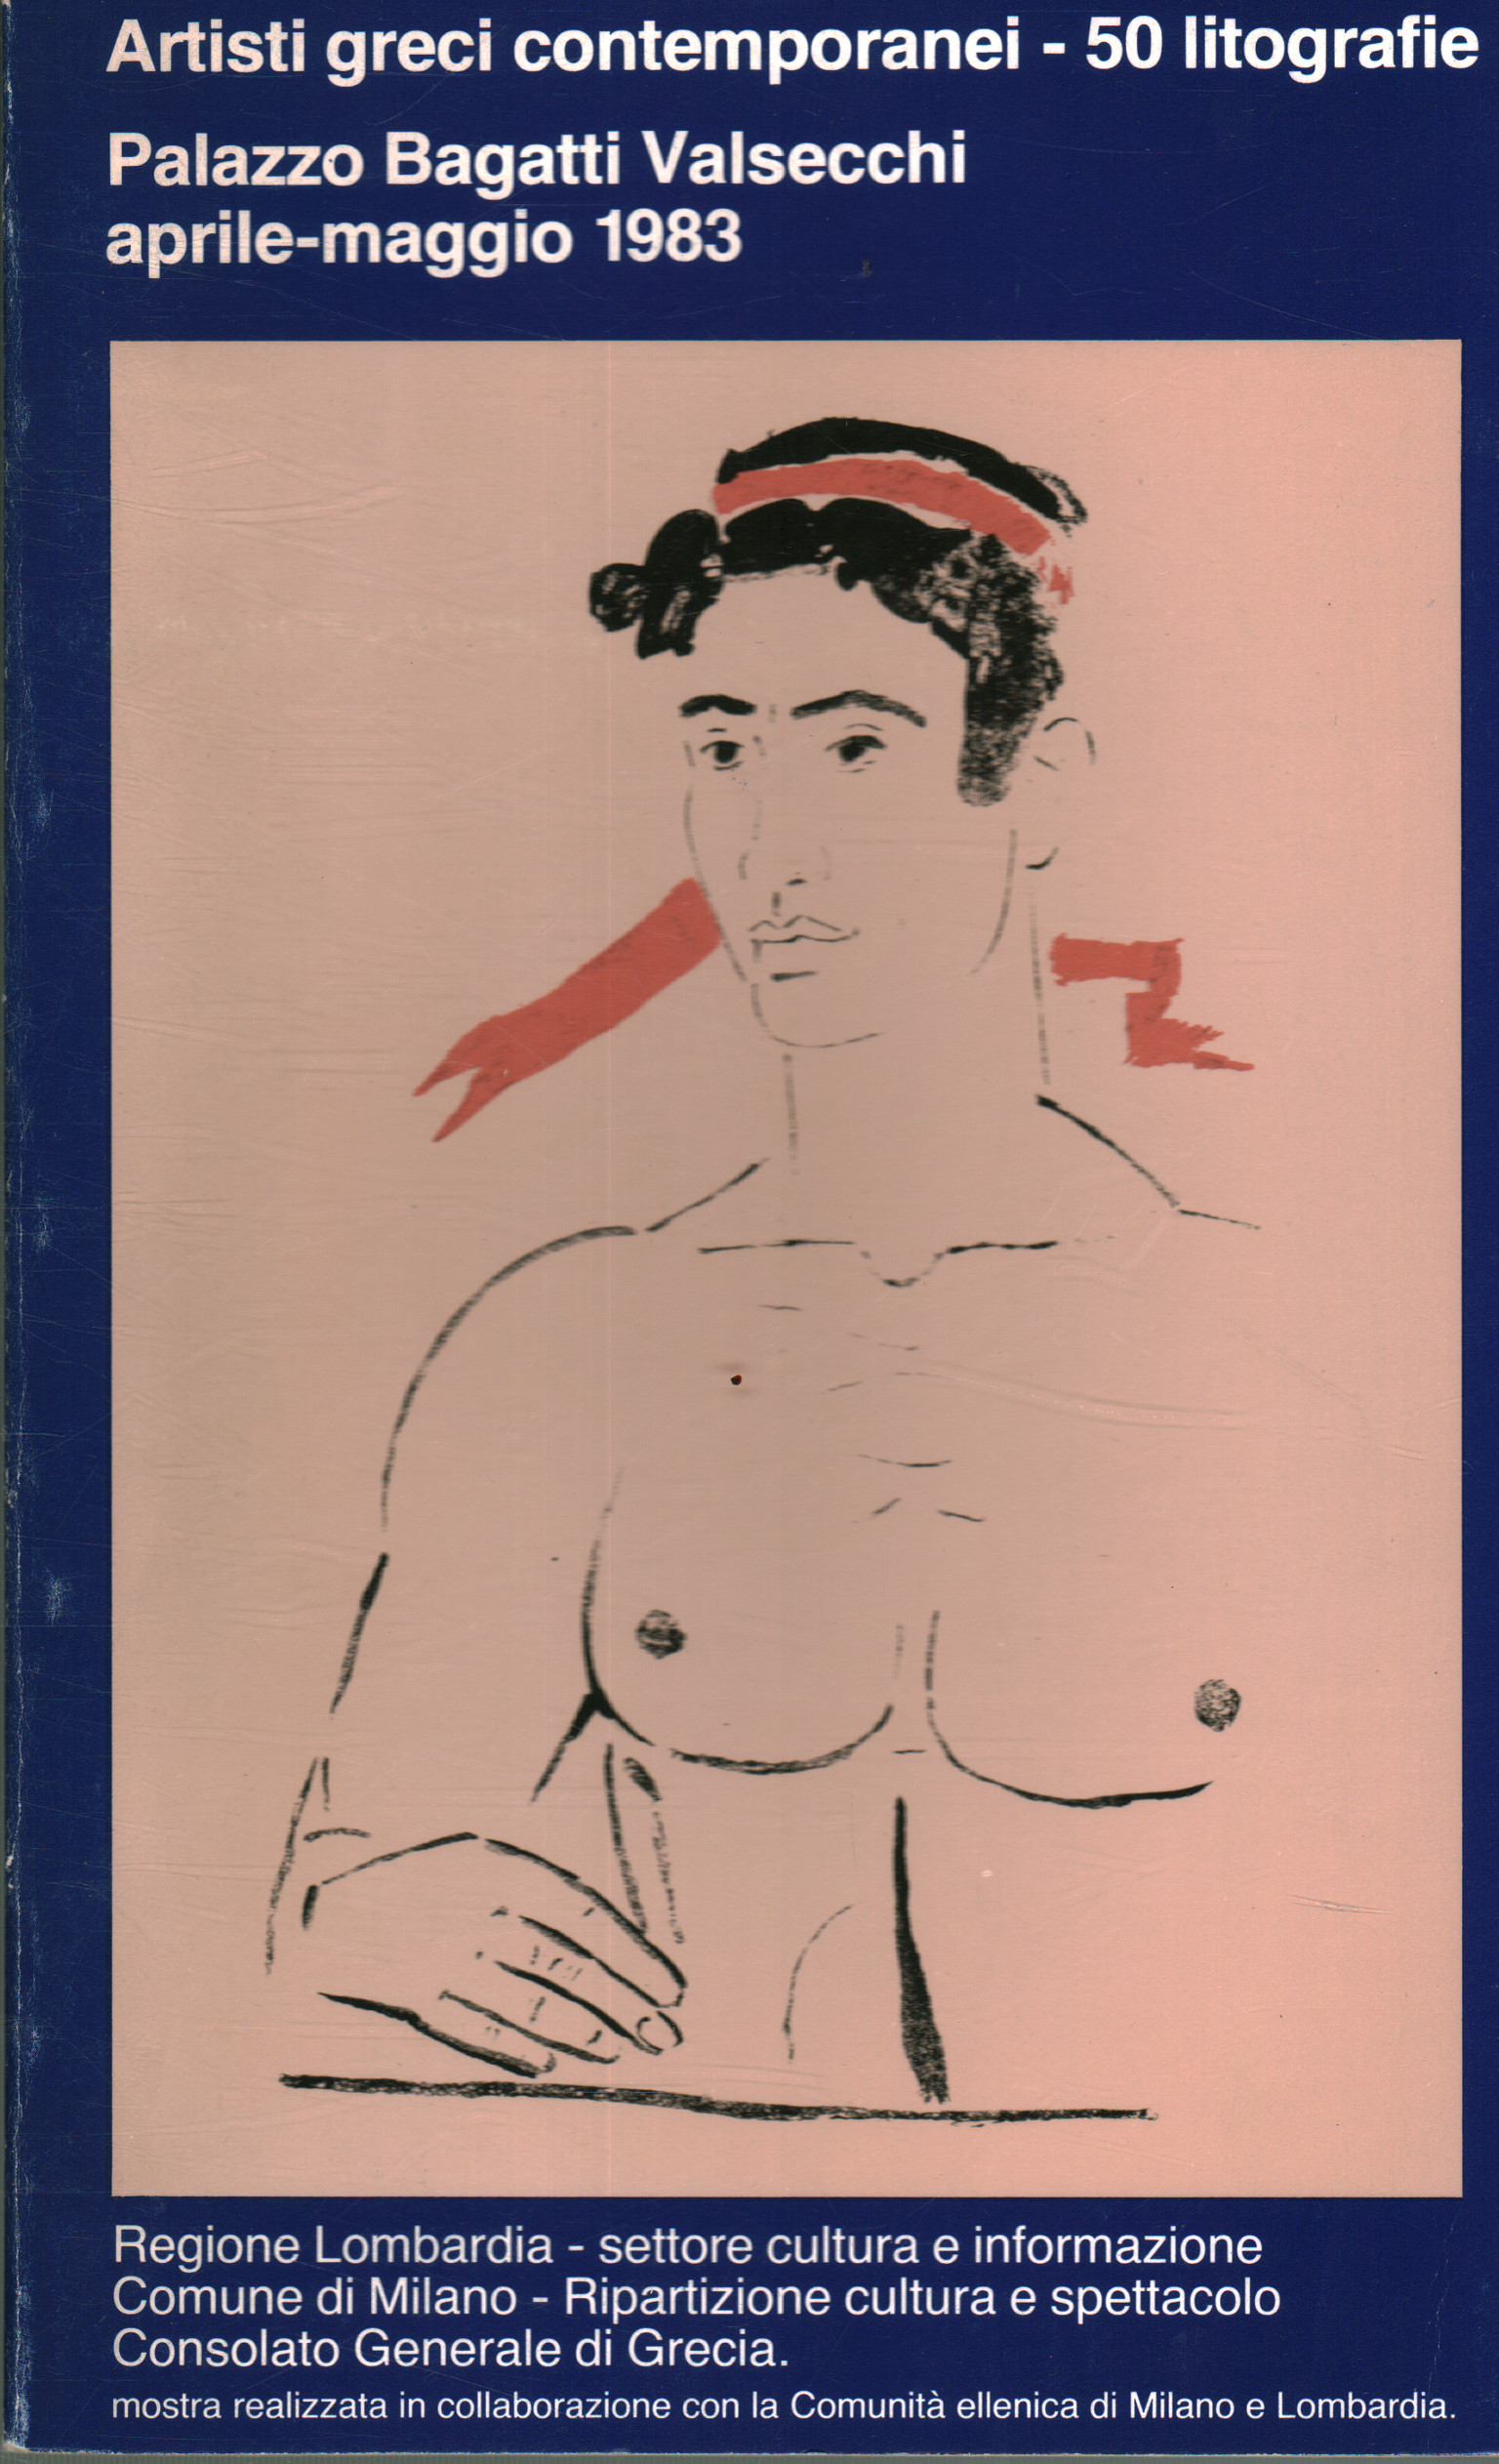 Artisti greci contemporanei - 50 litografie, AA.VV.